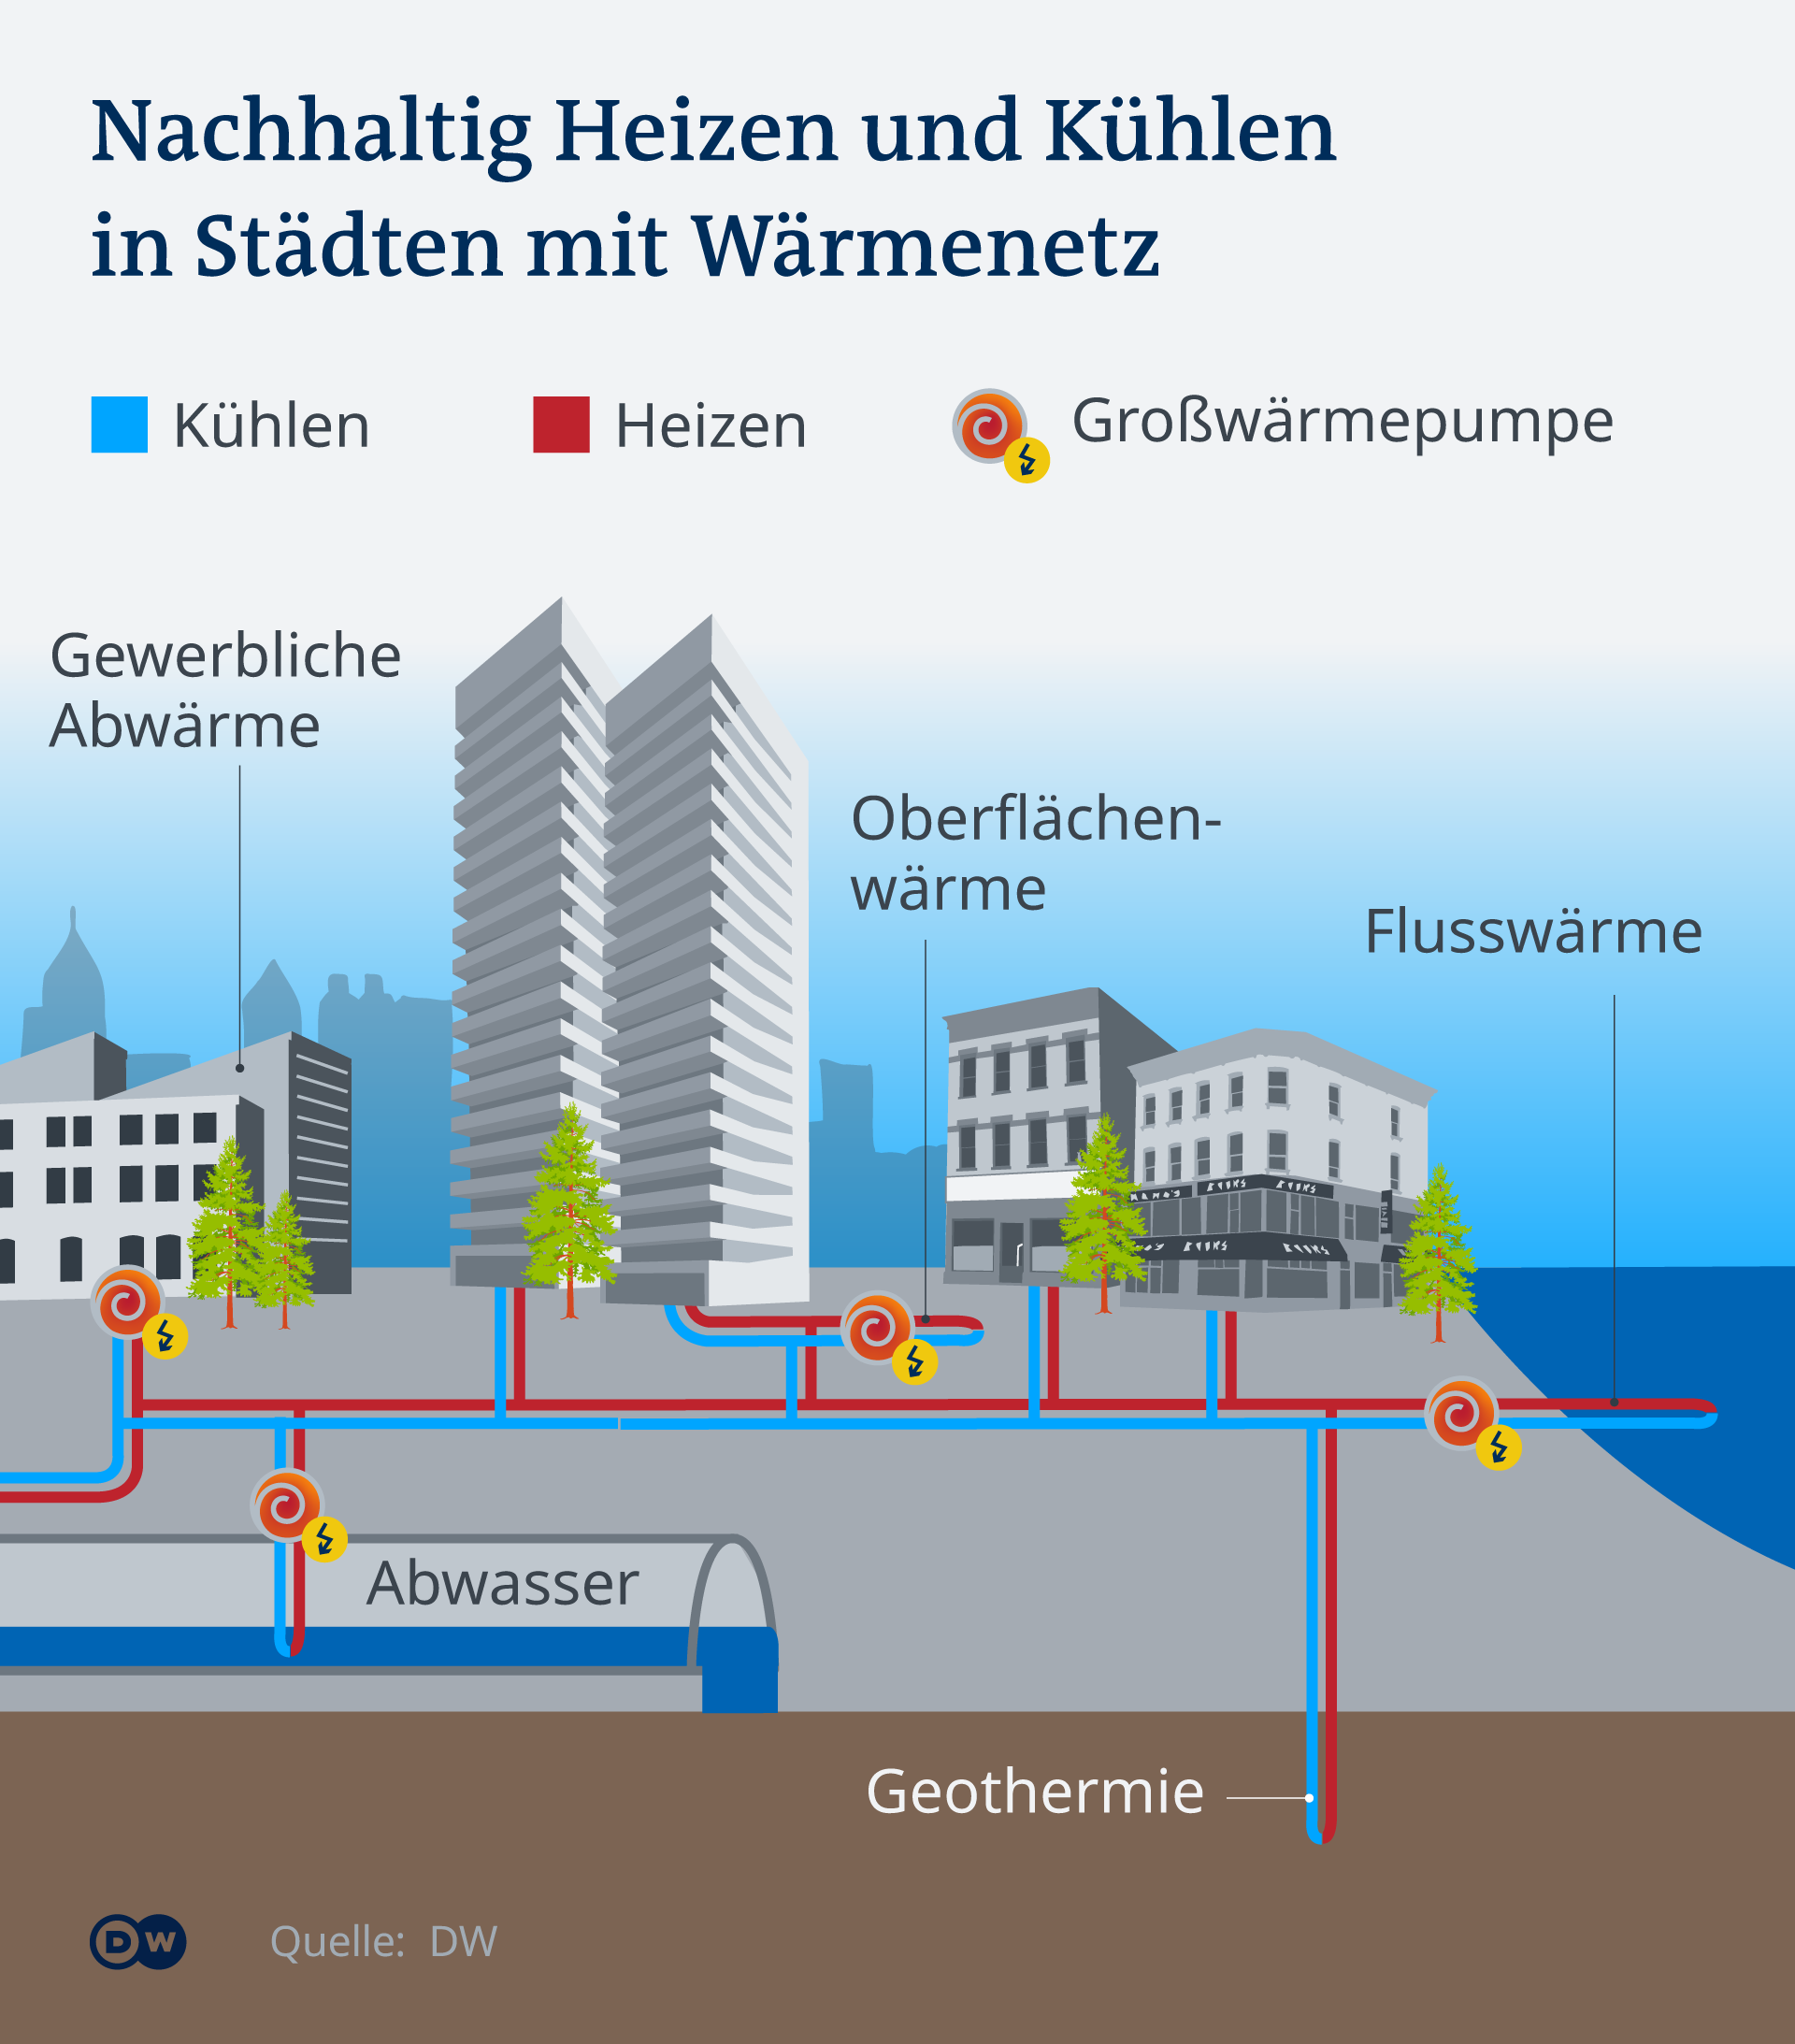 Infografik Wärmenetz mit Großwärmepumpen aus Abwasser, Flusswärme, Oberflächenwärme, Wärmesonden, Gewerbliche Abwärme und Geothermie 